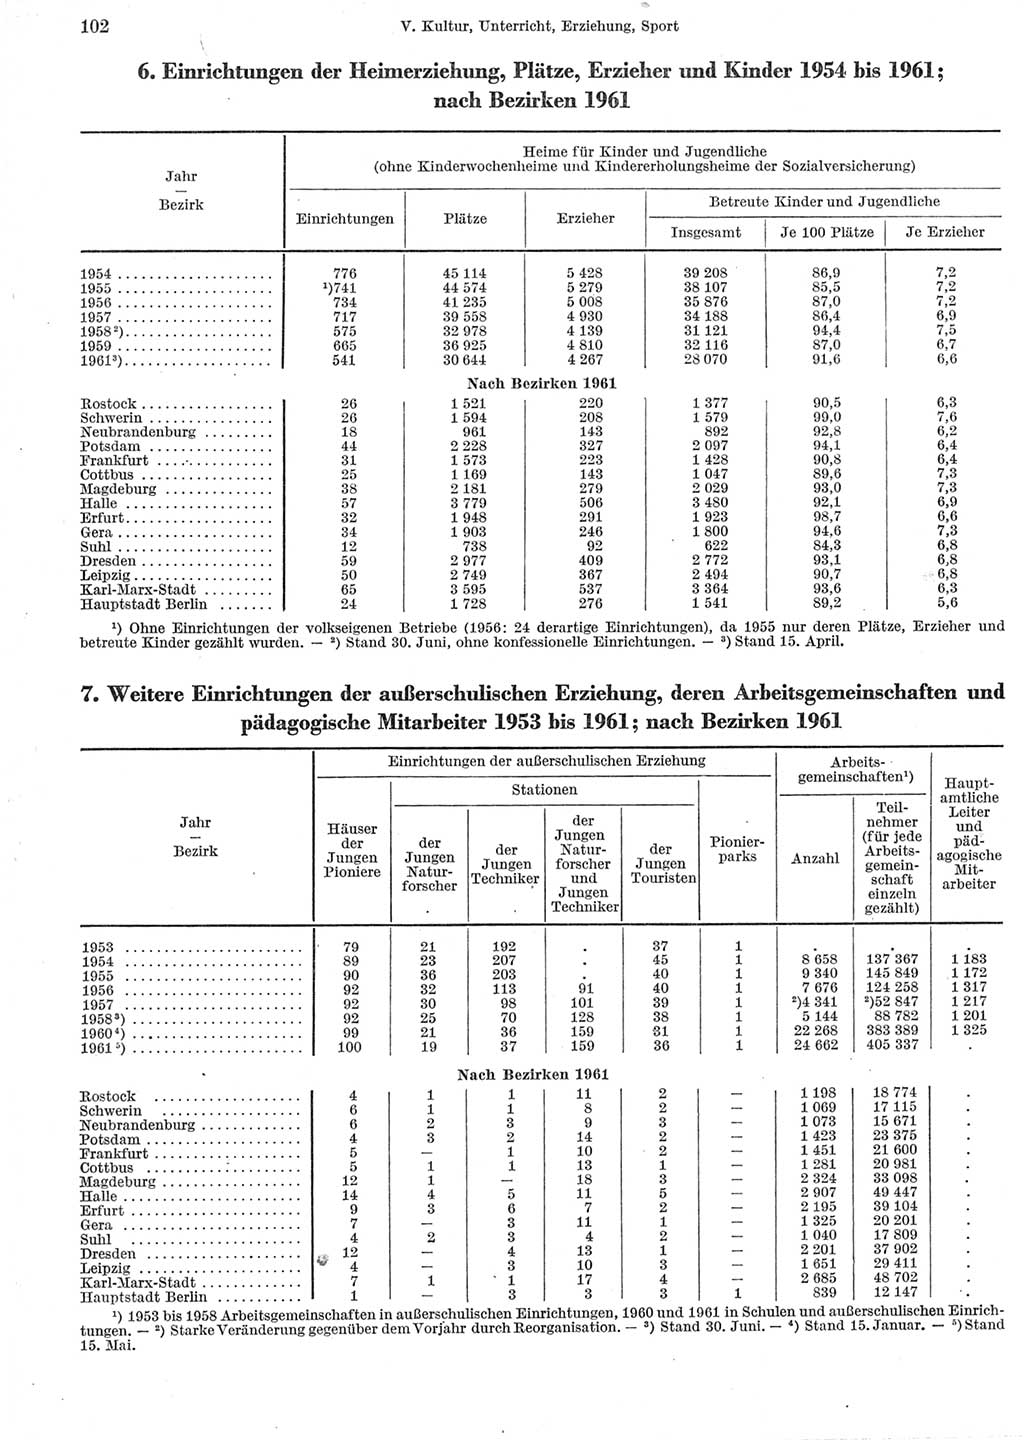 Statistisches Jahrbuch der Deutschen Demokratischen Republik (DDR) 1962, Seite 102 (Stat. Jb. DDR 1962, S. 102)